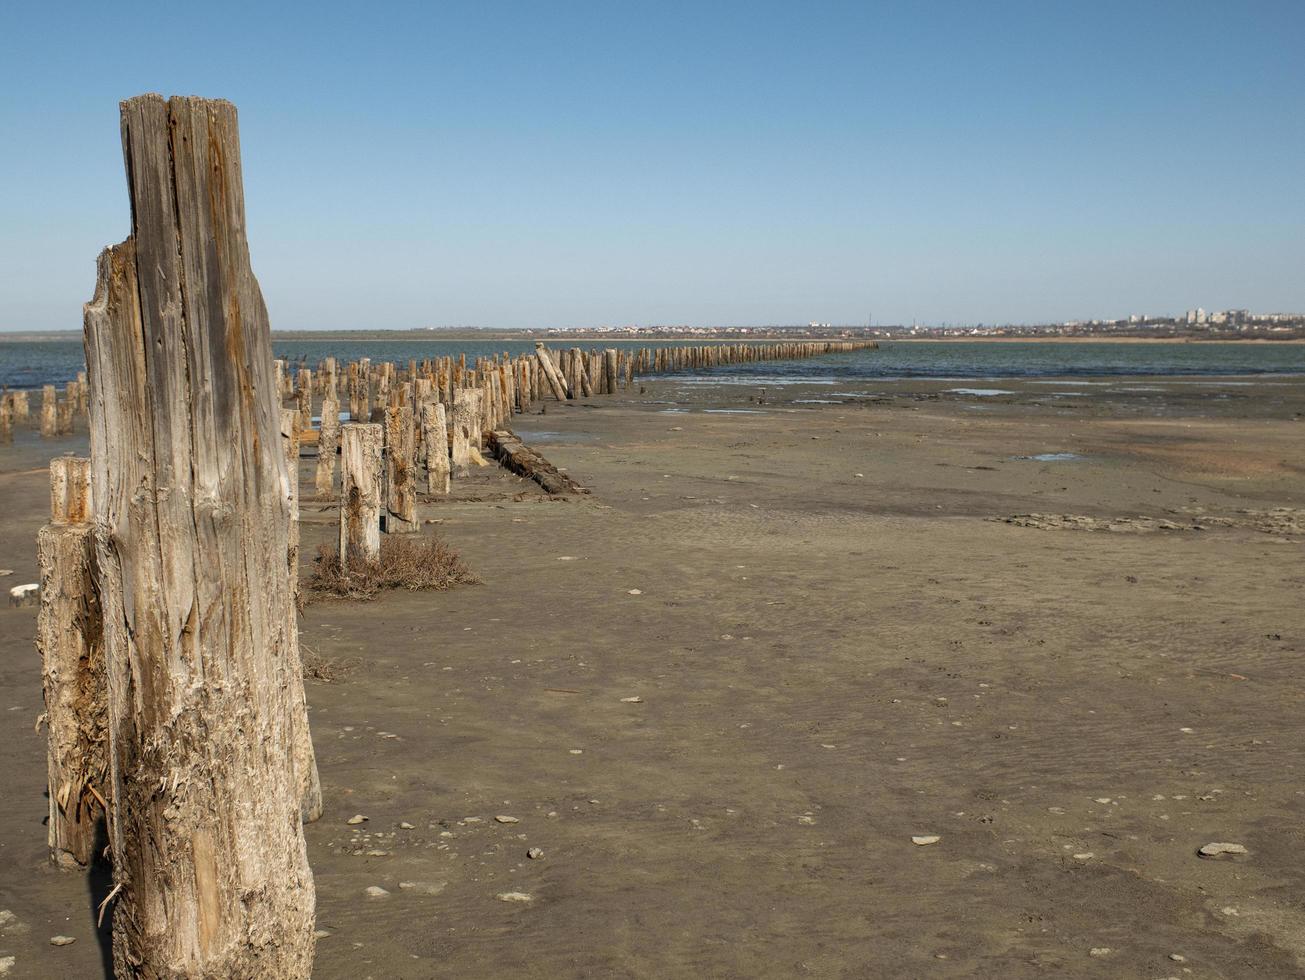 Bolardos de madera en la arena contra el estuario y el cielo azul. estuario kuyalnitsky foto